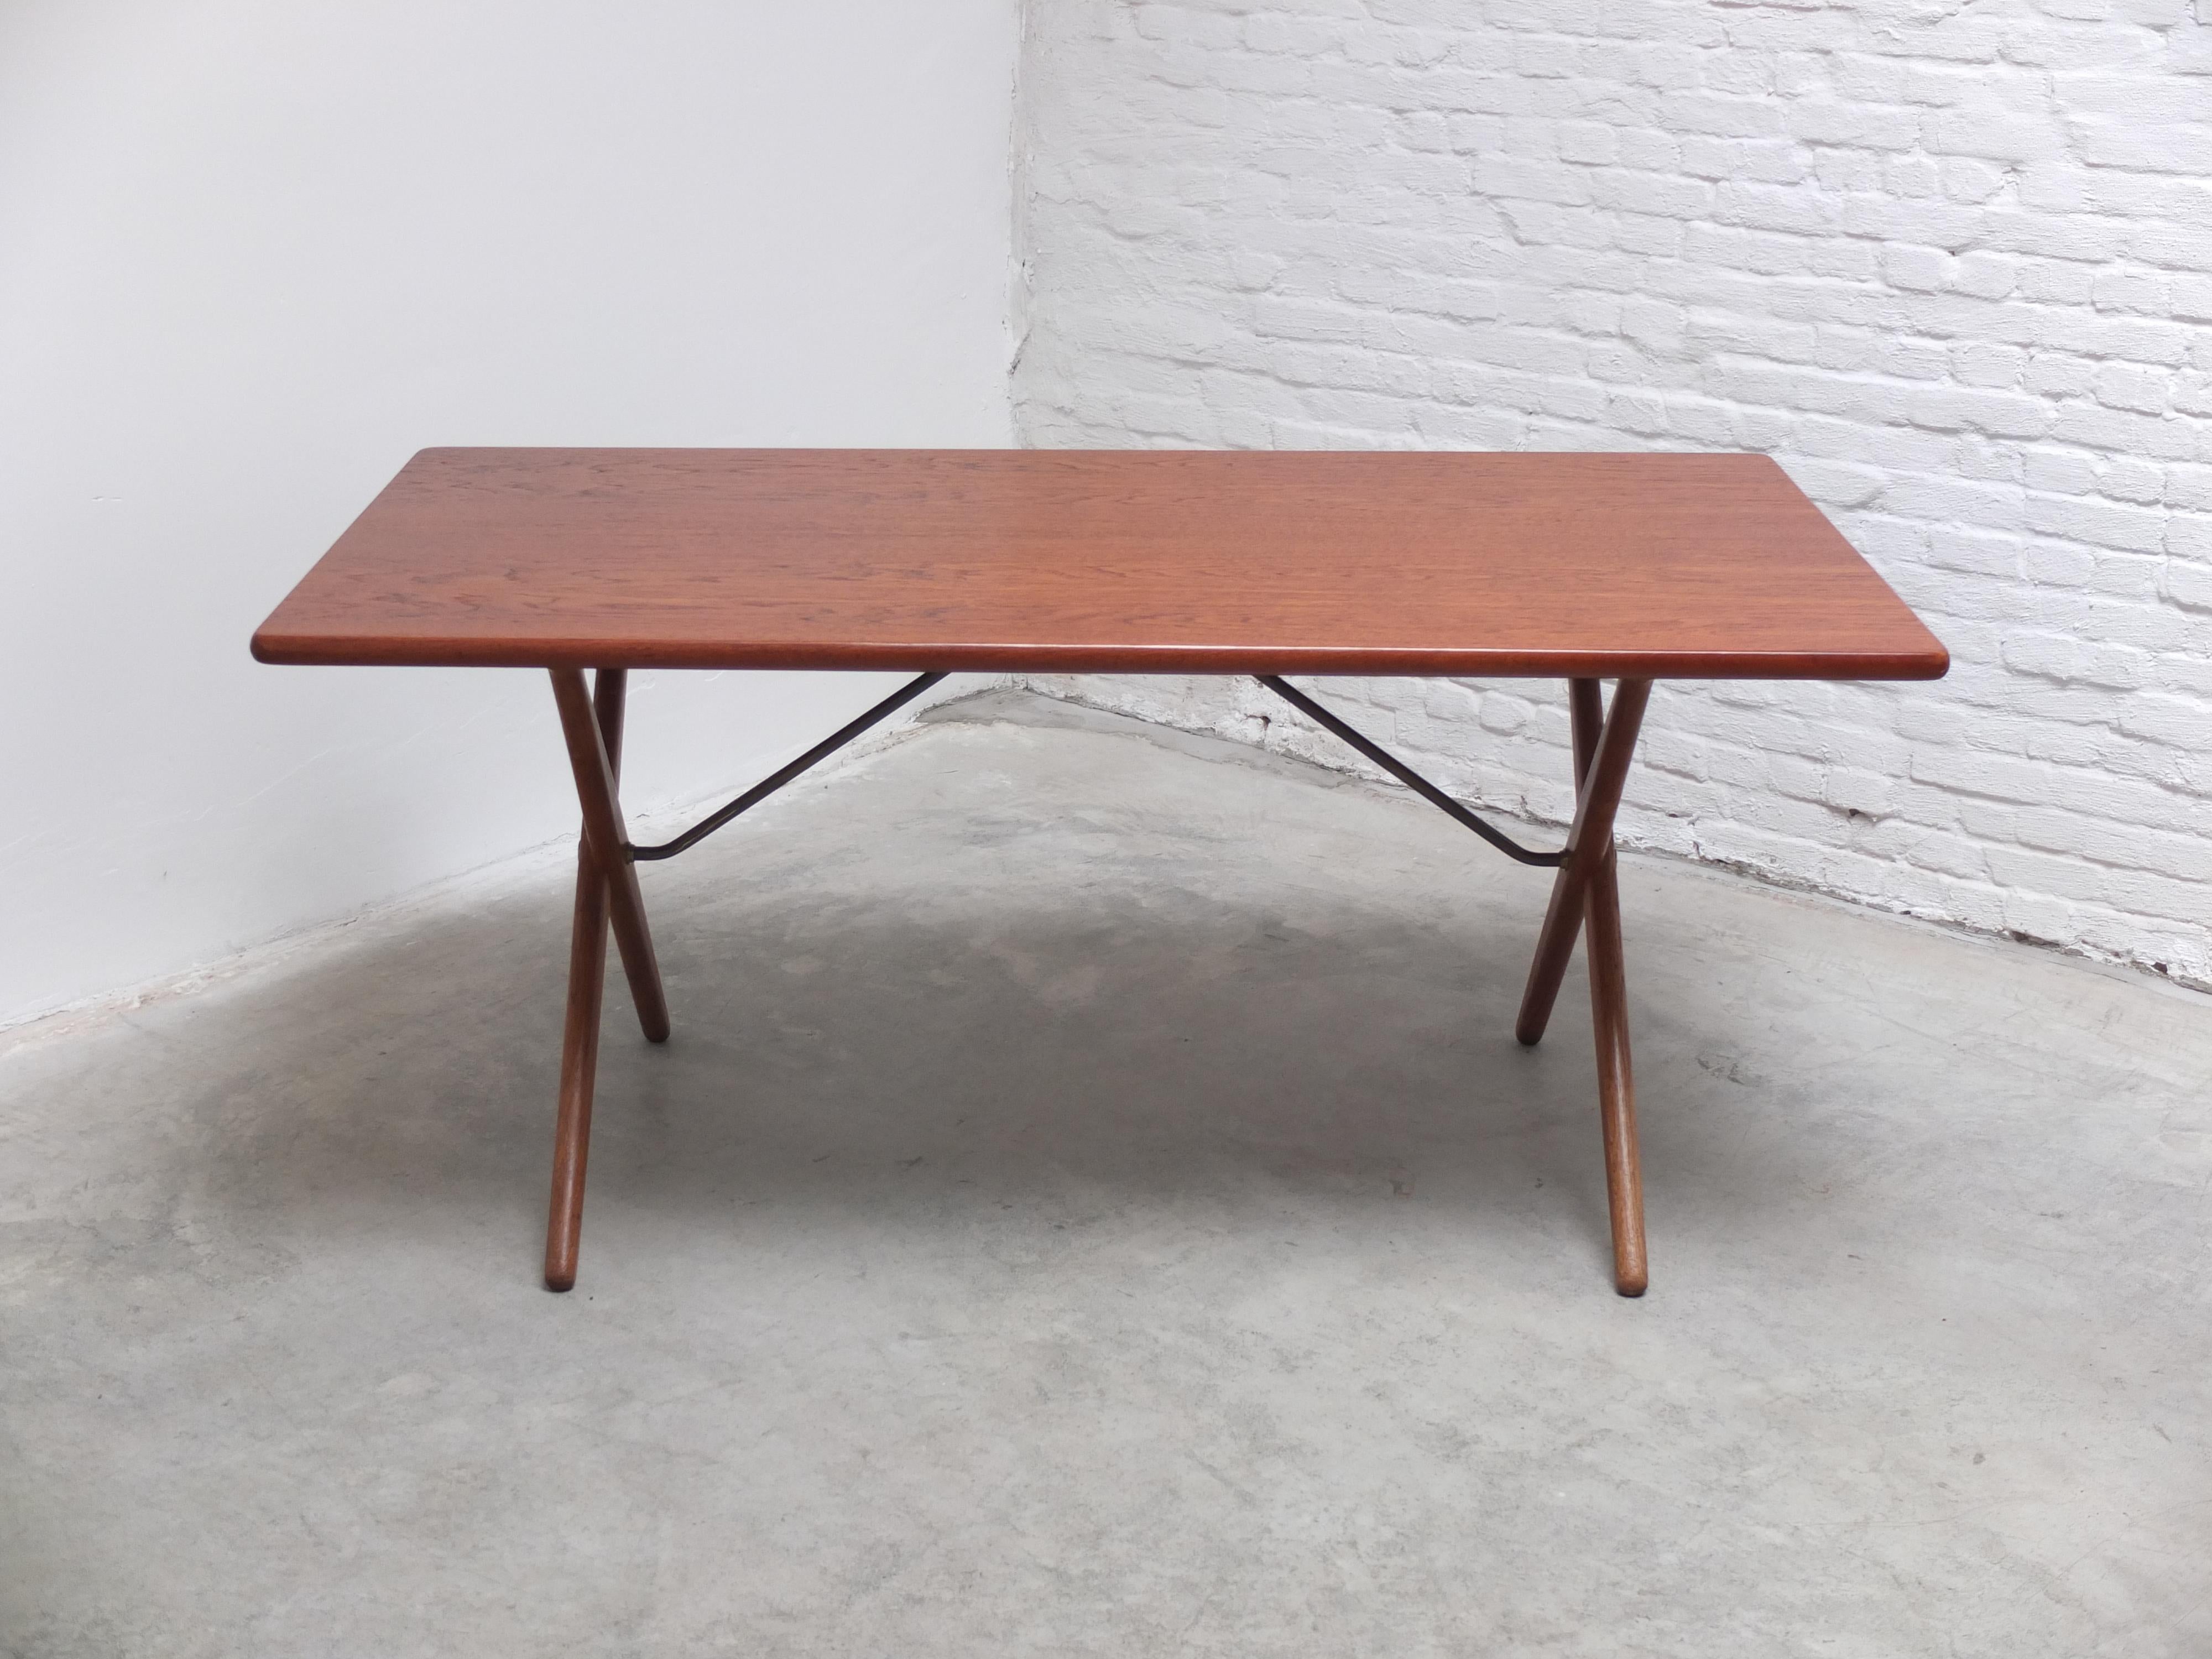 Fantastischer Esstisch 'AT 303', entworfen von Hans Wegner im Jahr 1955. Dieser so genannte Quertisch hat eine Platte aus Teakholz und Beine aus massiver Eiche mit einer Stange aus Messing und kann auch als Schreibtisch verwendet werden. Produziert